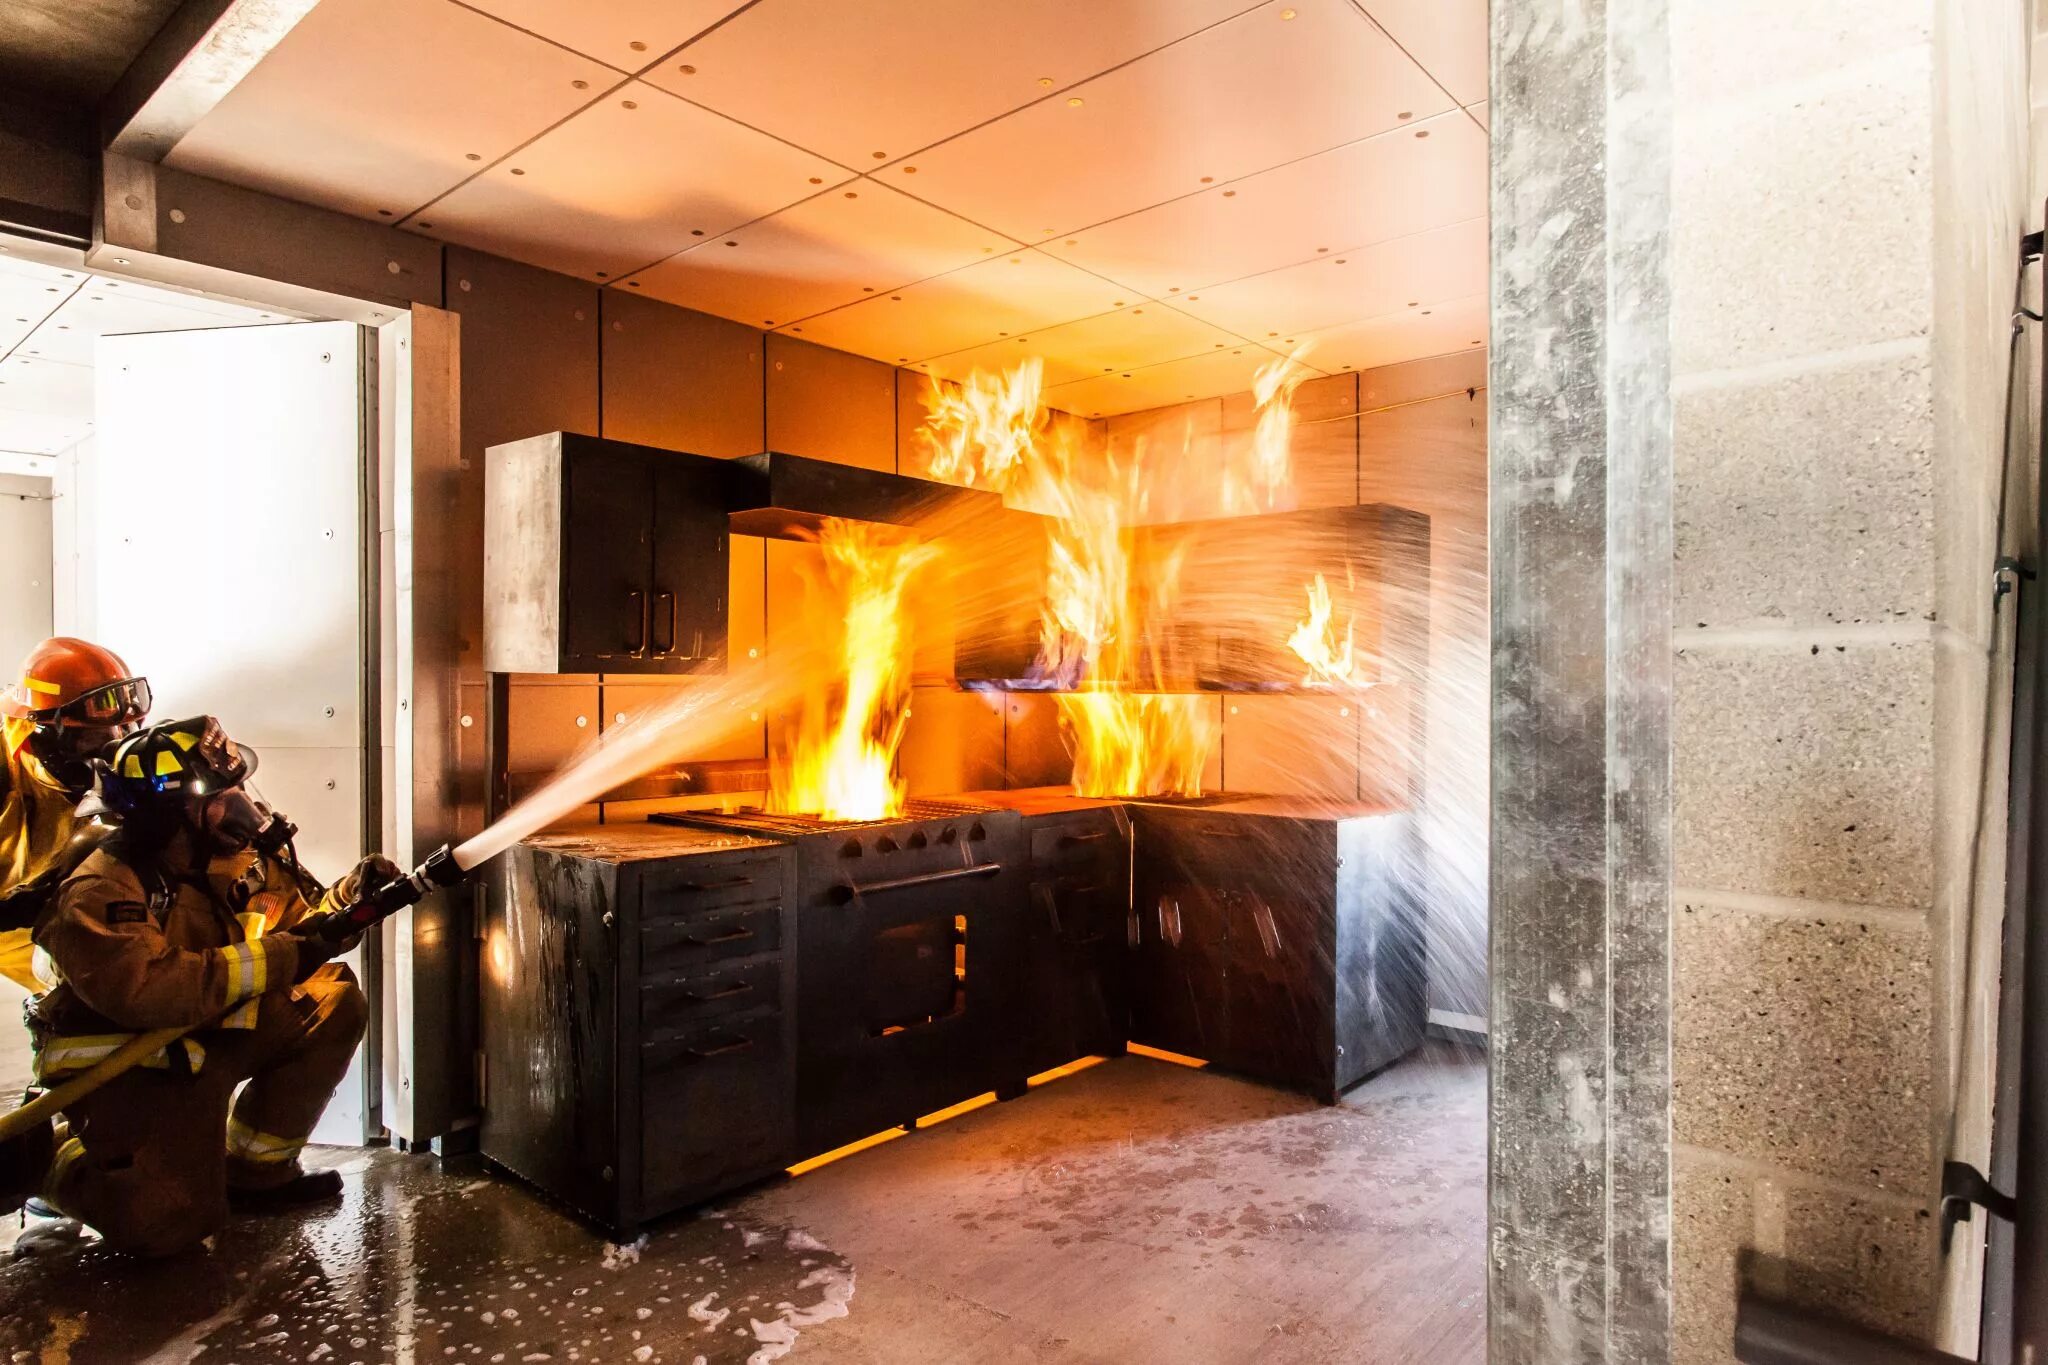 Пожар в квартире. Комната в огне. Огонь в квартире. Огонь на кухне.